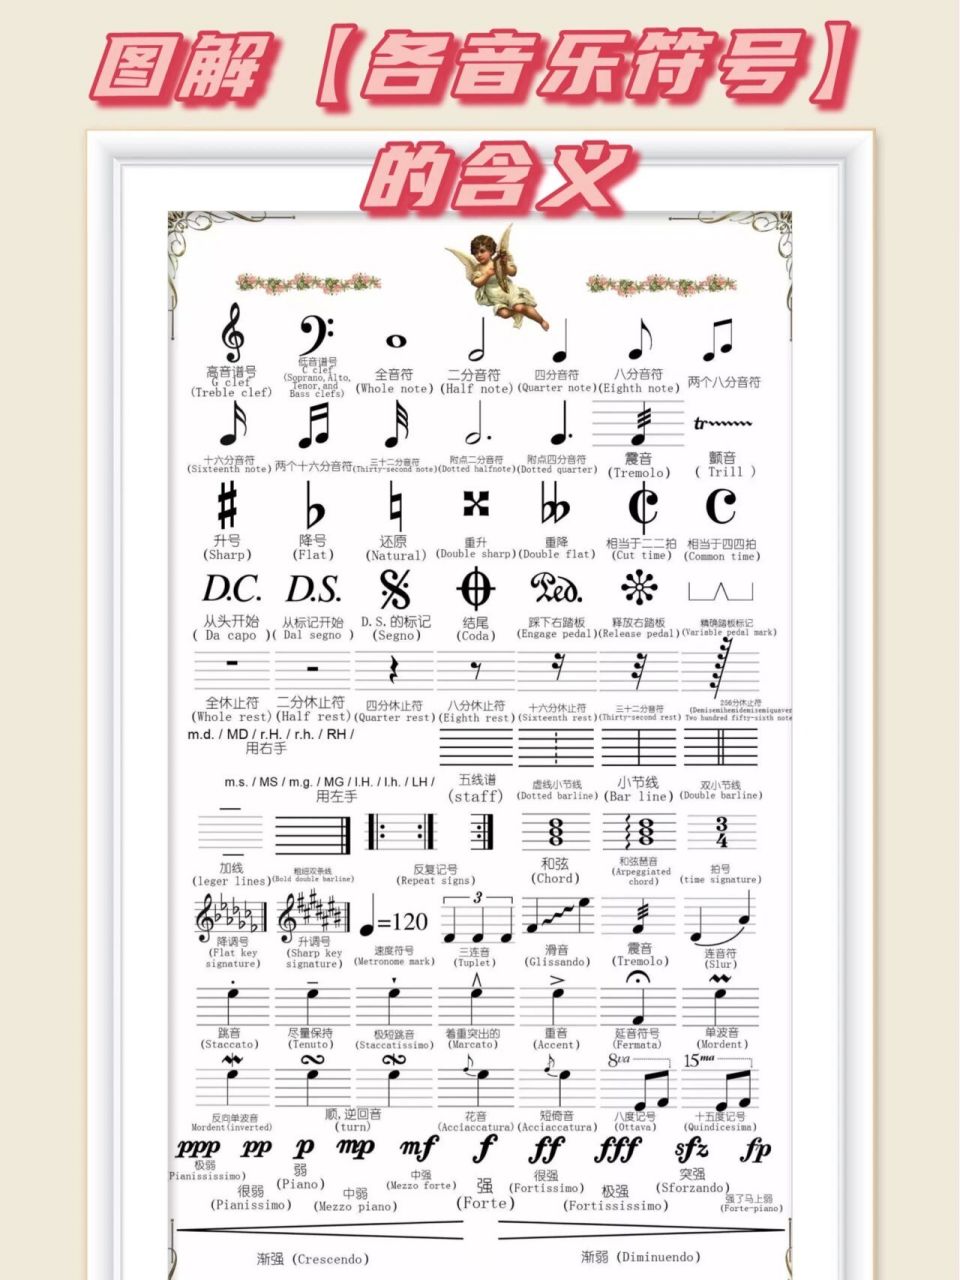 图解【各音乐符号】的含义 这里给大家整理了一套常用音乐符号的图解